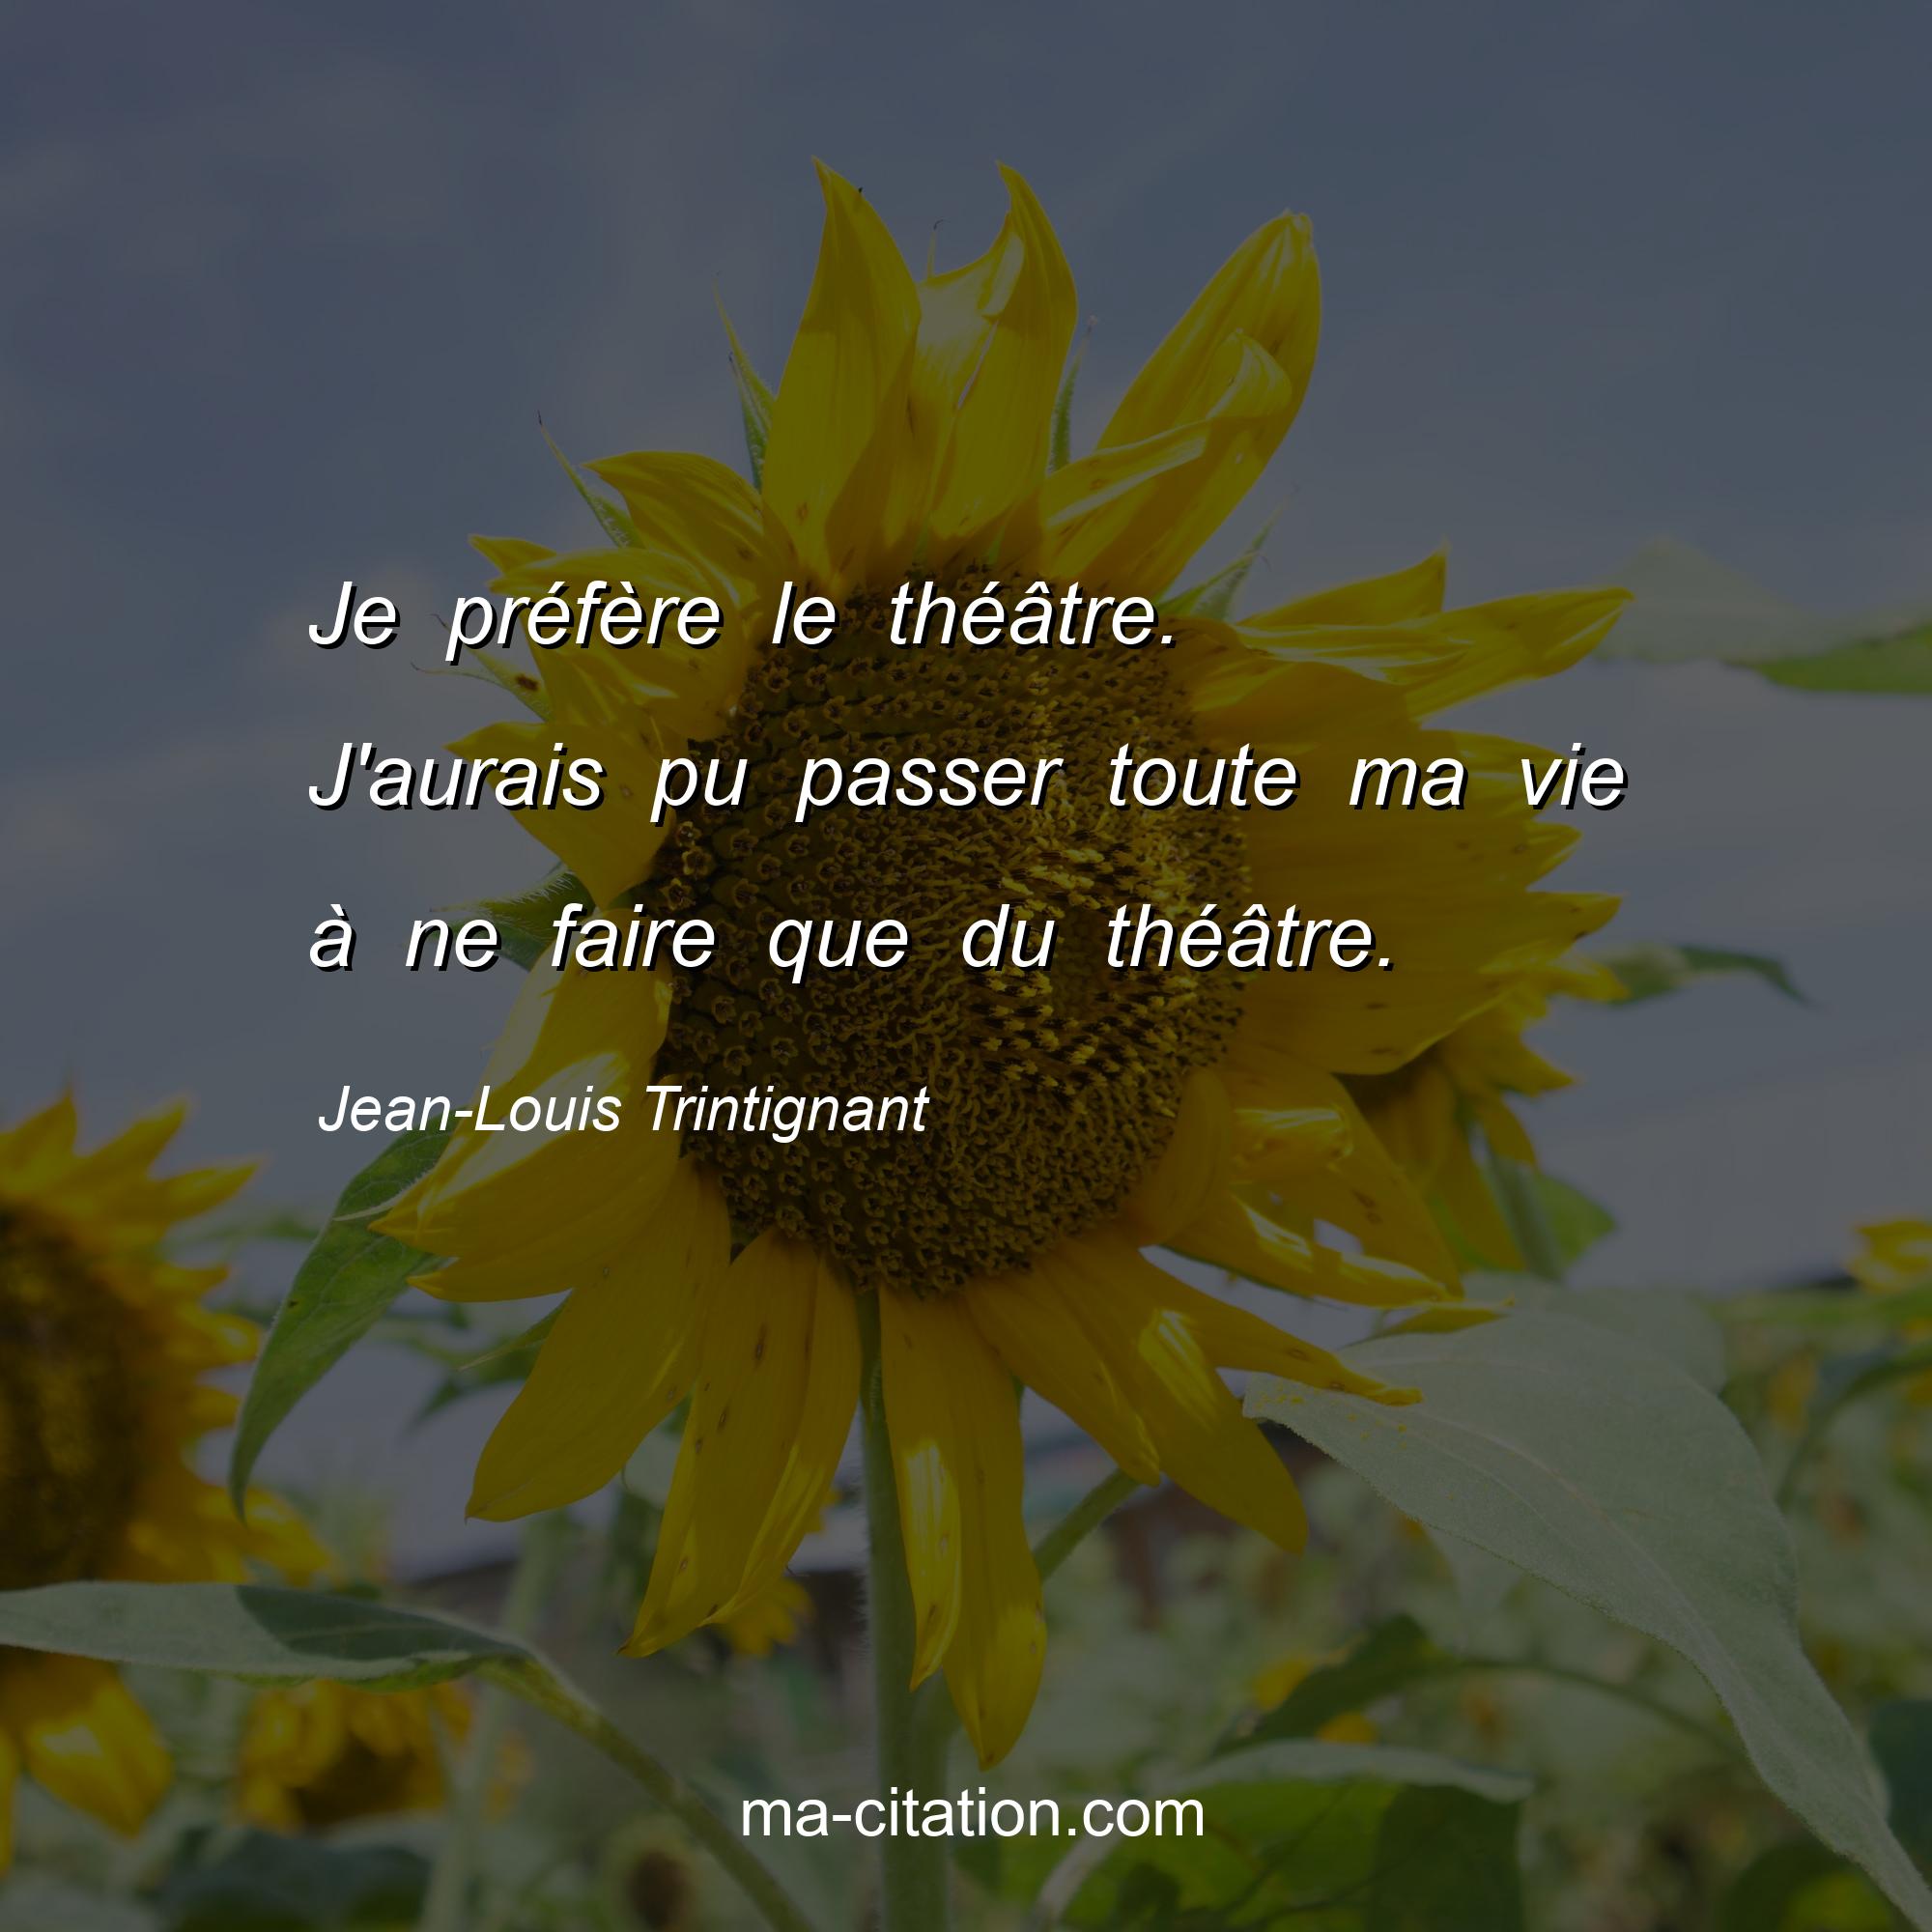 Jean-Louis Trintignant : Je préfère le théâtre. J'aurais pu passer toute ma vie à ne faire que du théâtre.